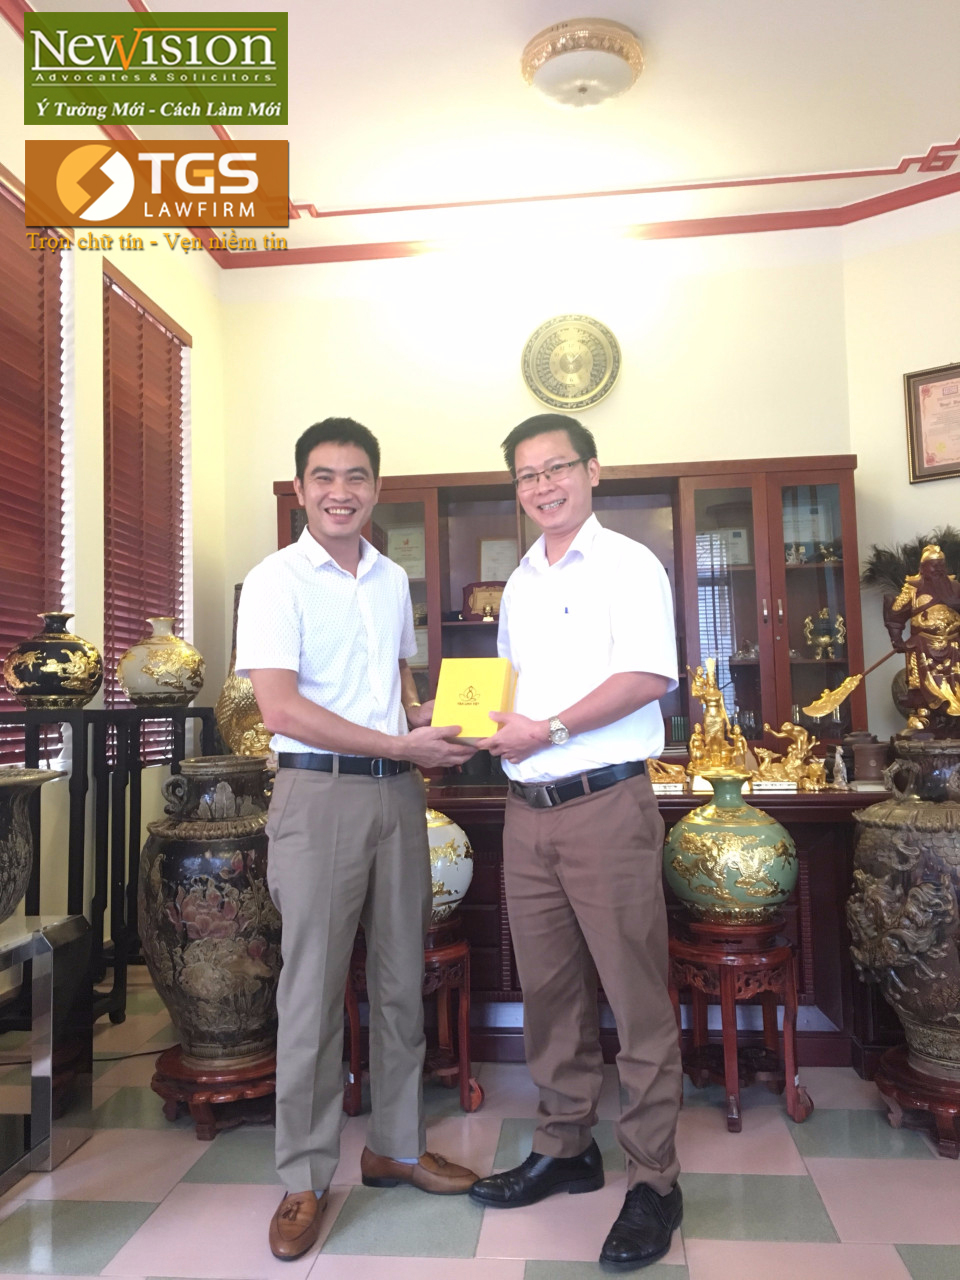 Ông Tạ Văn Thắng đại diện Công ty Bát Tràng tặng quà lưu niệm cho Luật sư Nguyễn Văn Tuấn sau buổi gặp mặt, làm việc